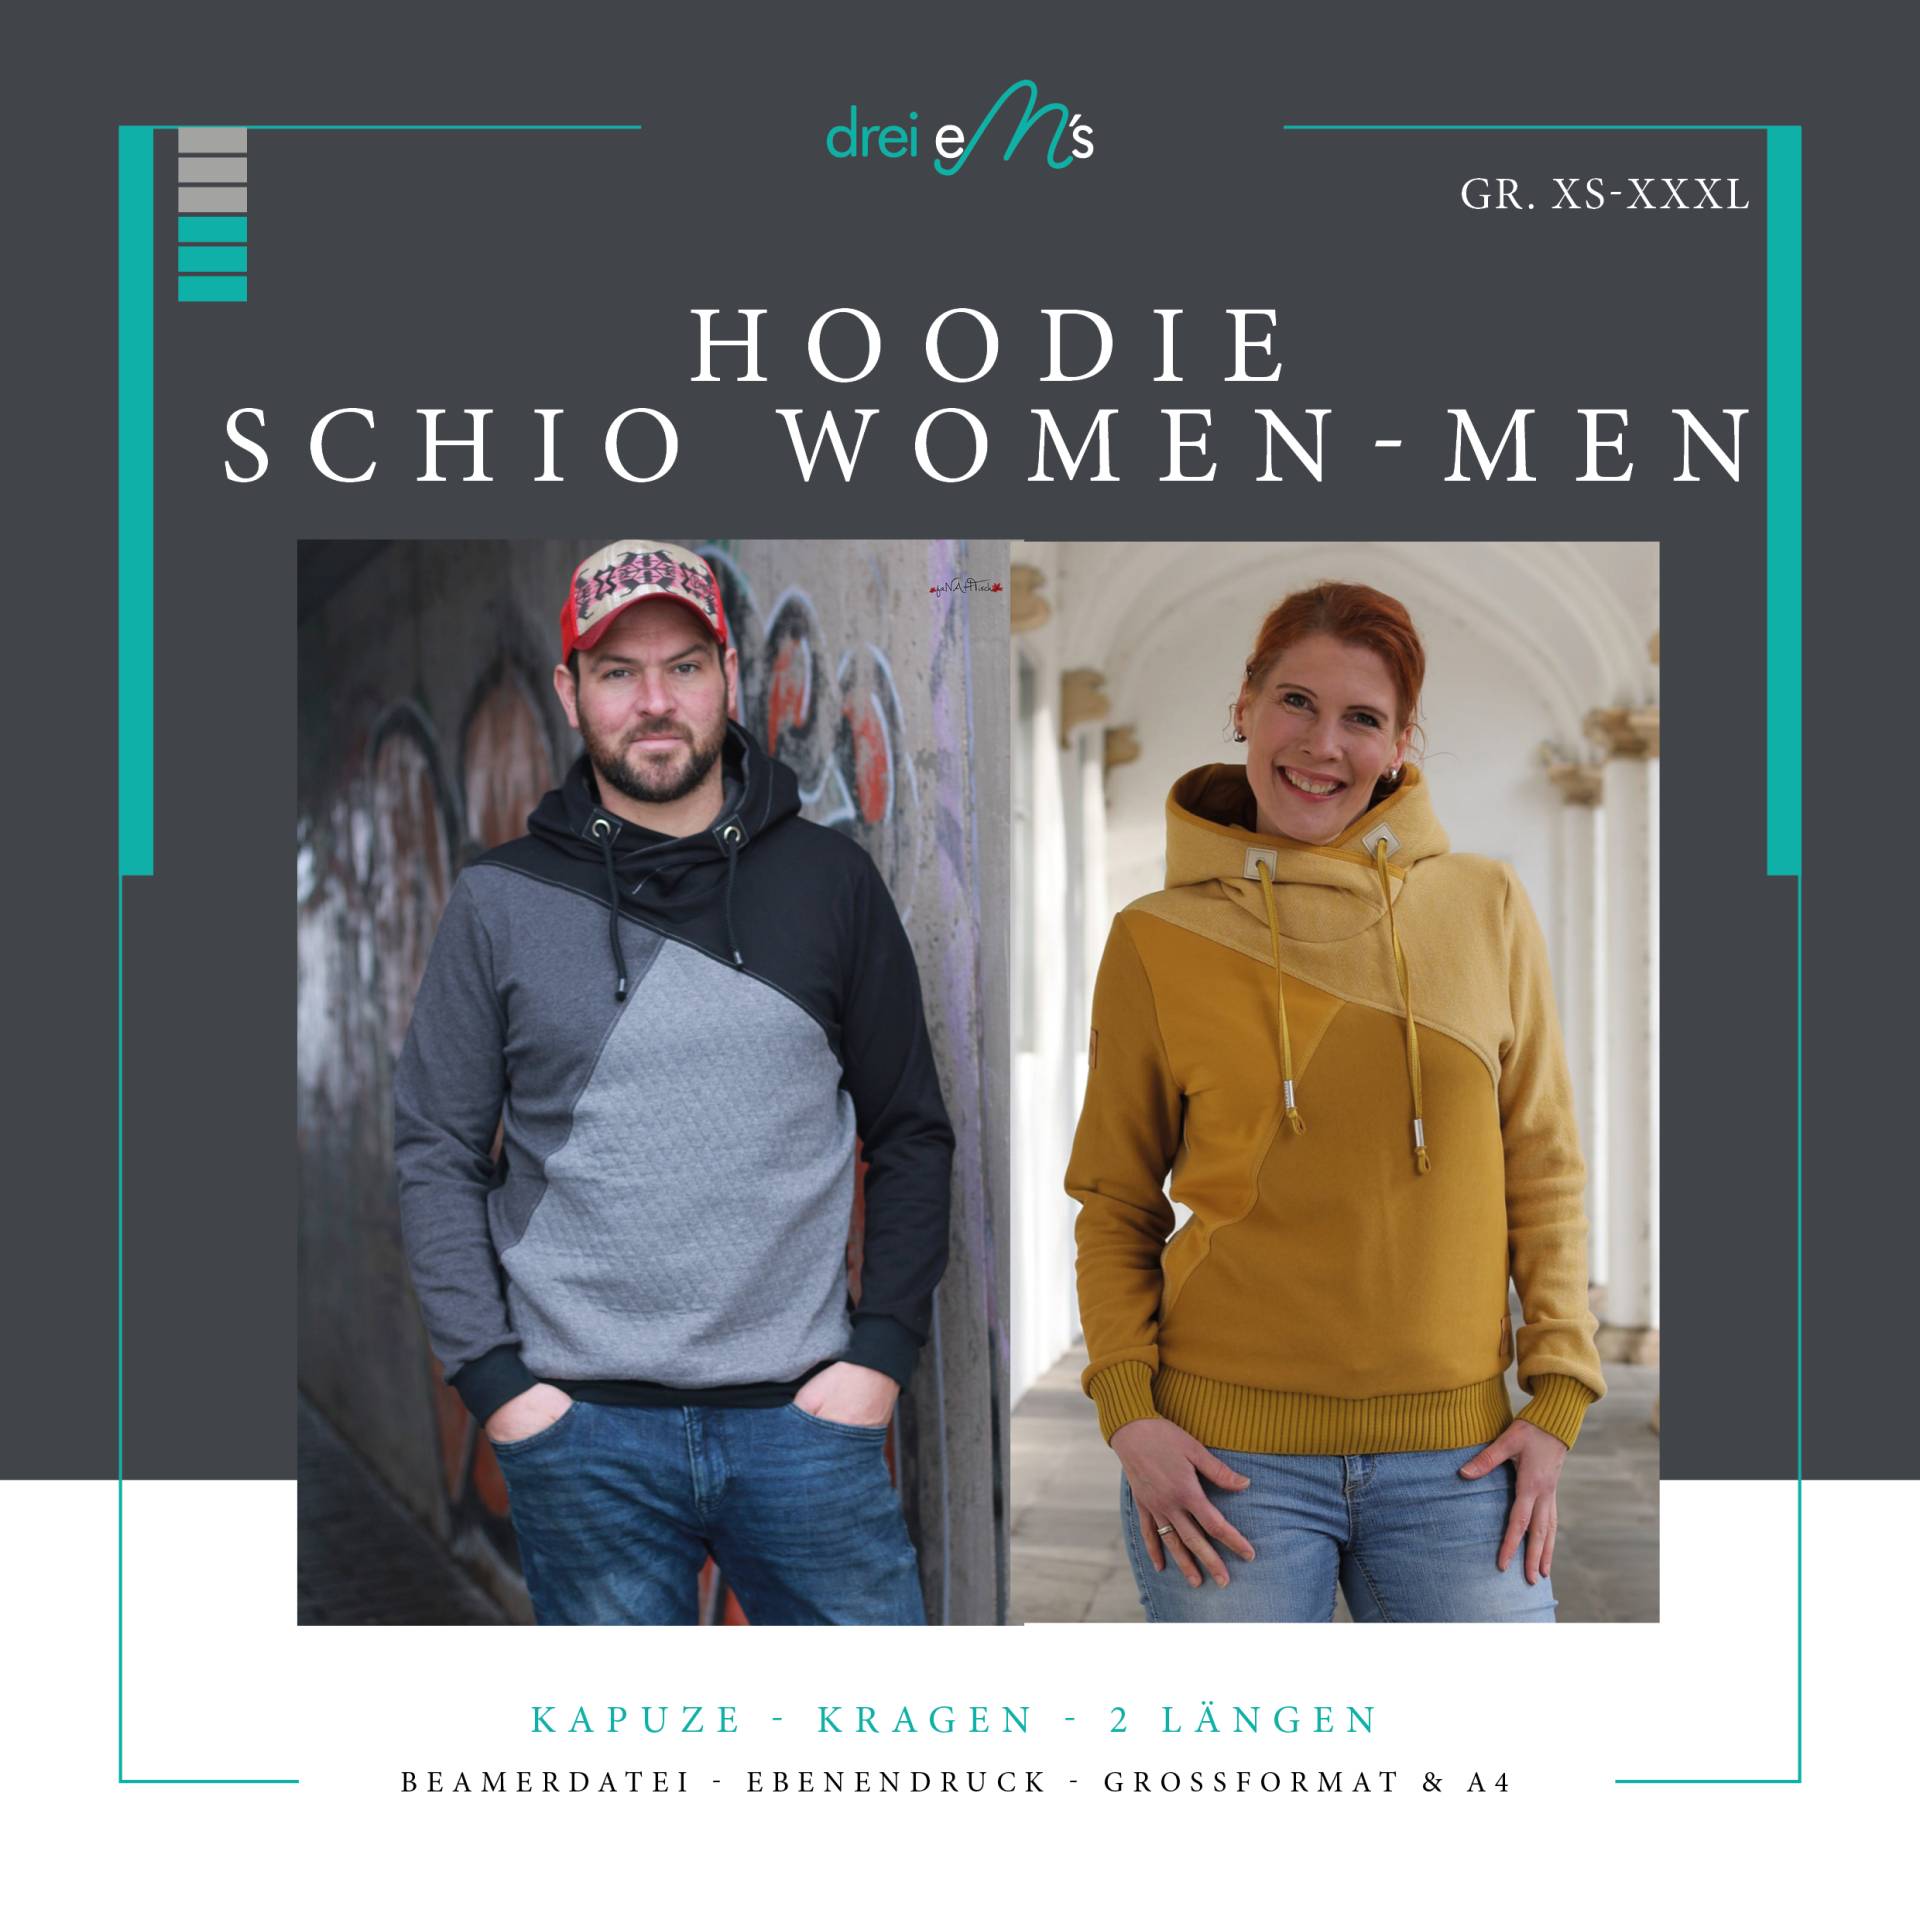 E-Book drei eM's Hoodie Schio Men - Women von Stoffe Hemmers